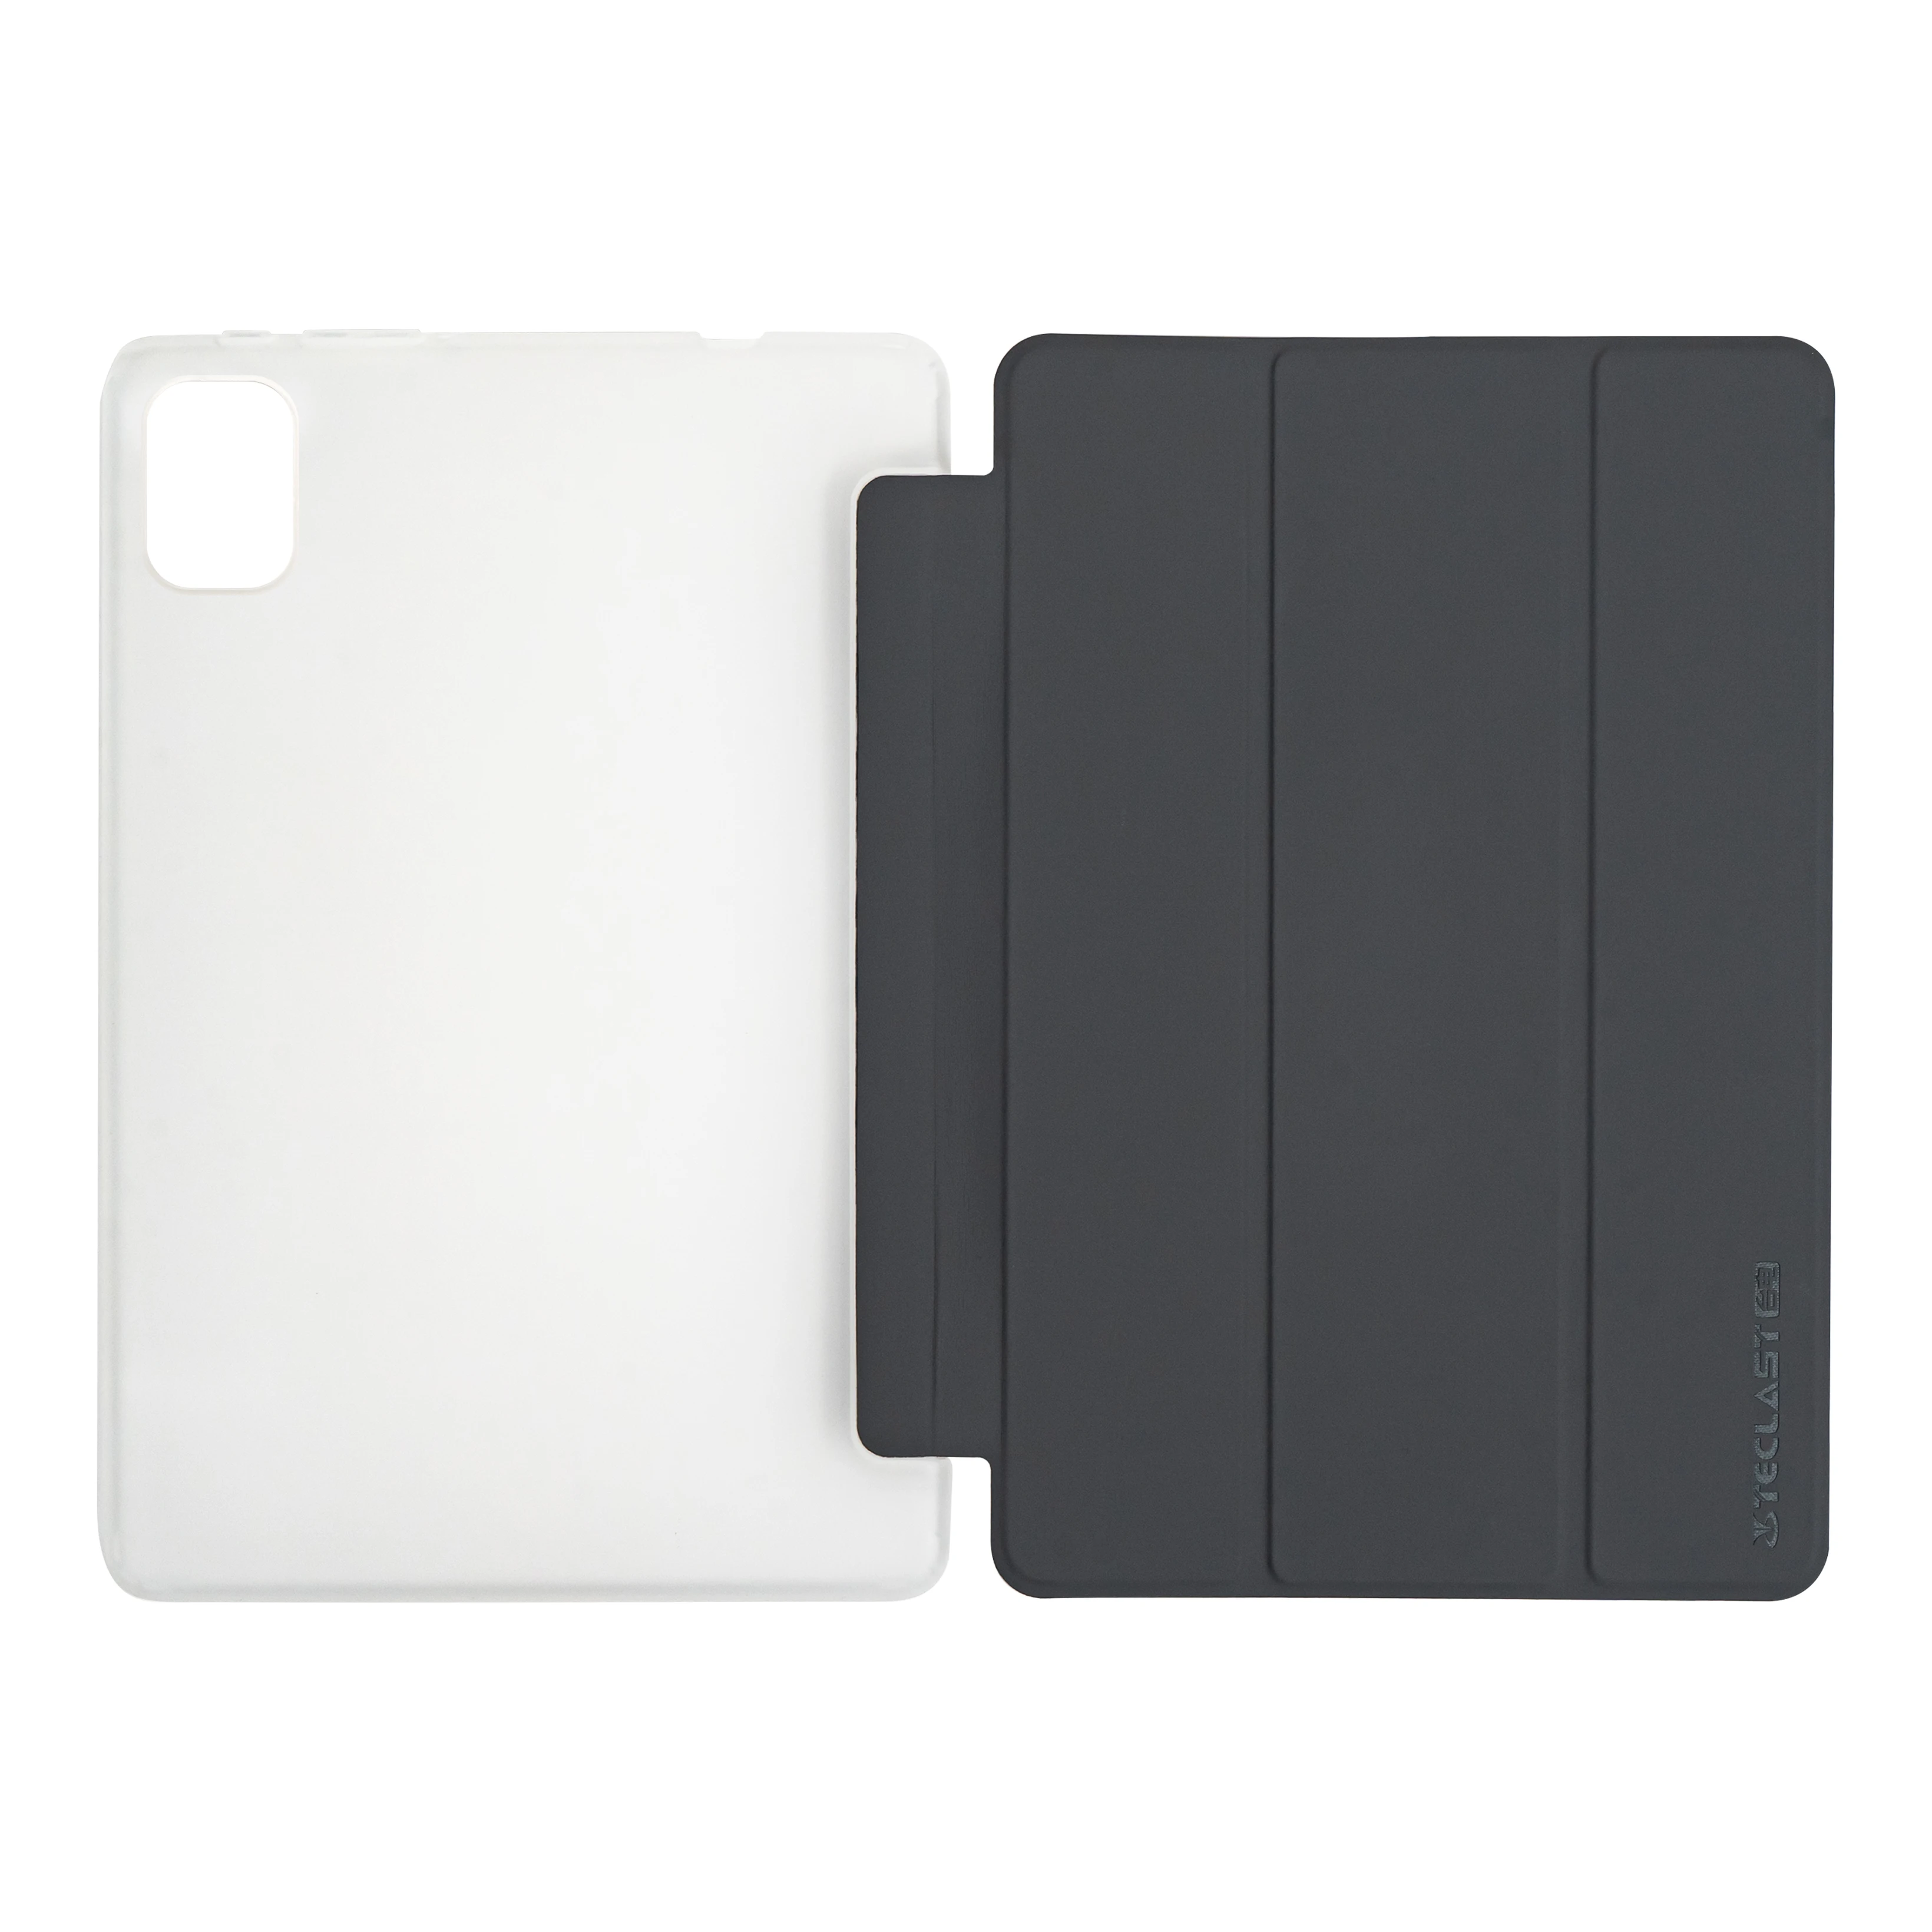 Оригинальный планшет Teclast 10,1-дюймовый Чехол для Teclast P40HD 8GB 2023 Держатель Защитного чехла Чехол-подставка для планшета для P40HD-8GB